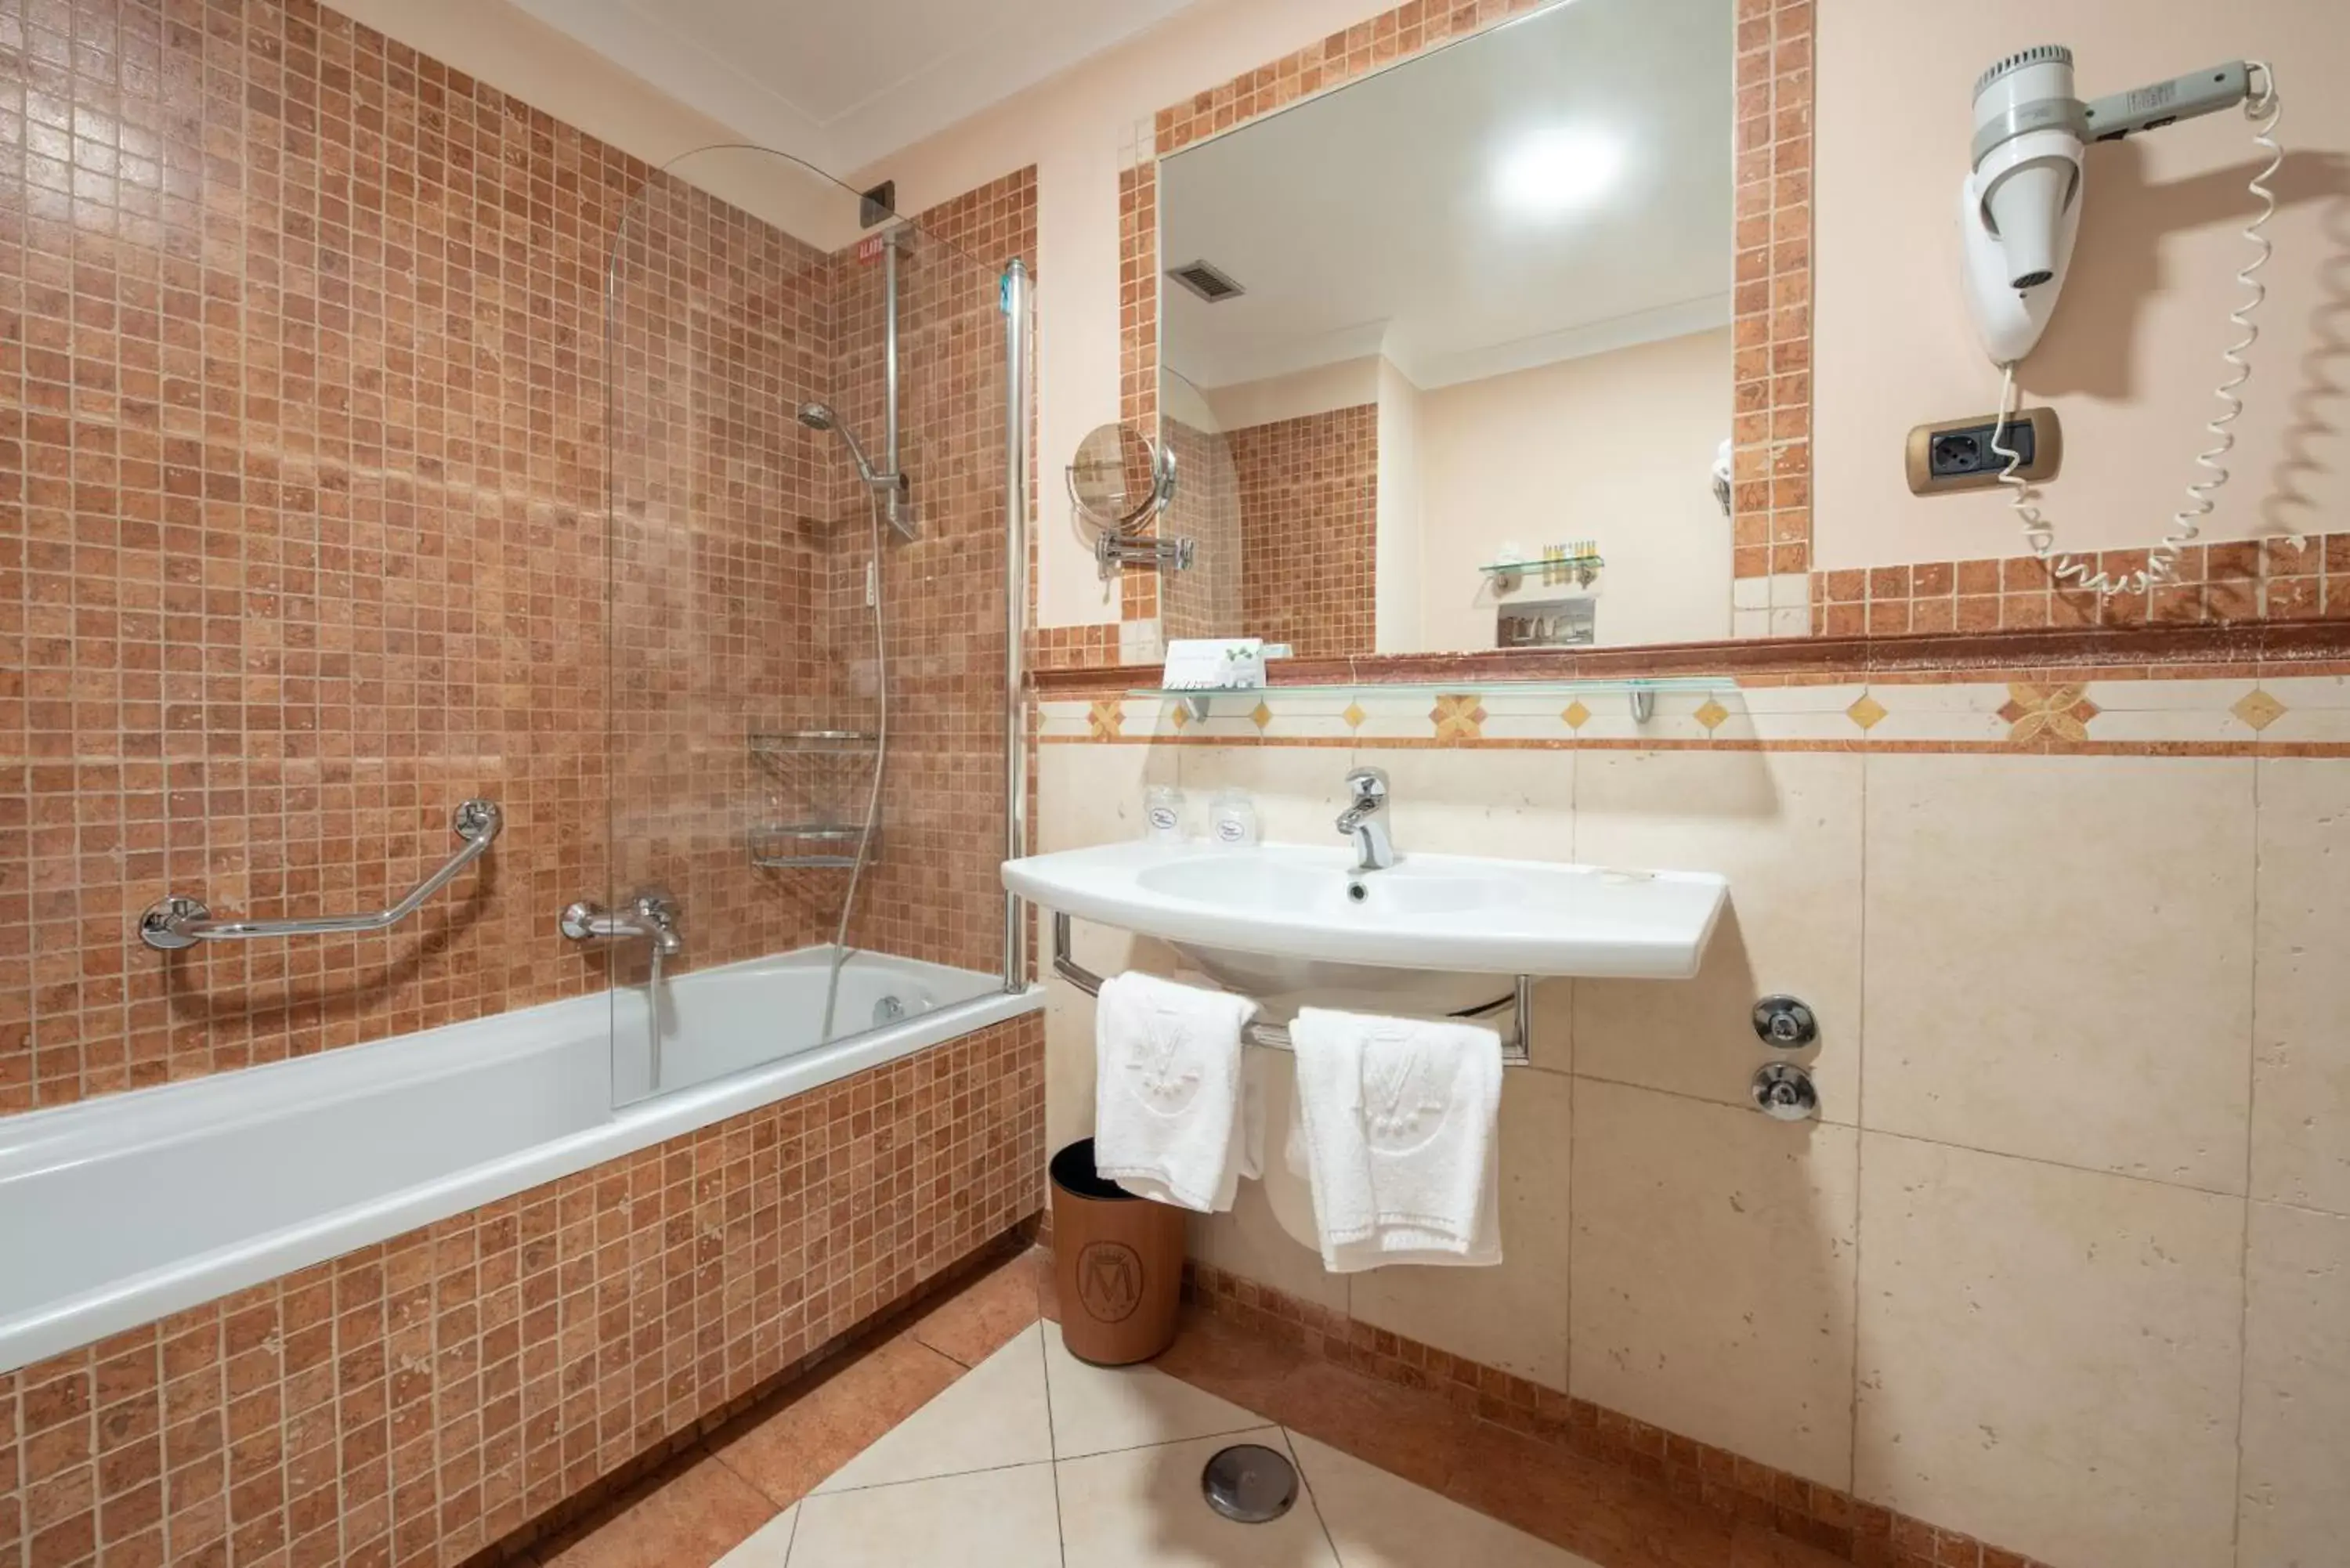 Bathroom in Hotel Michelangelo